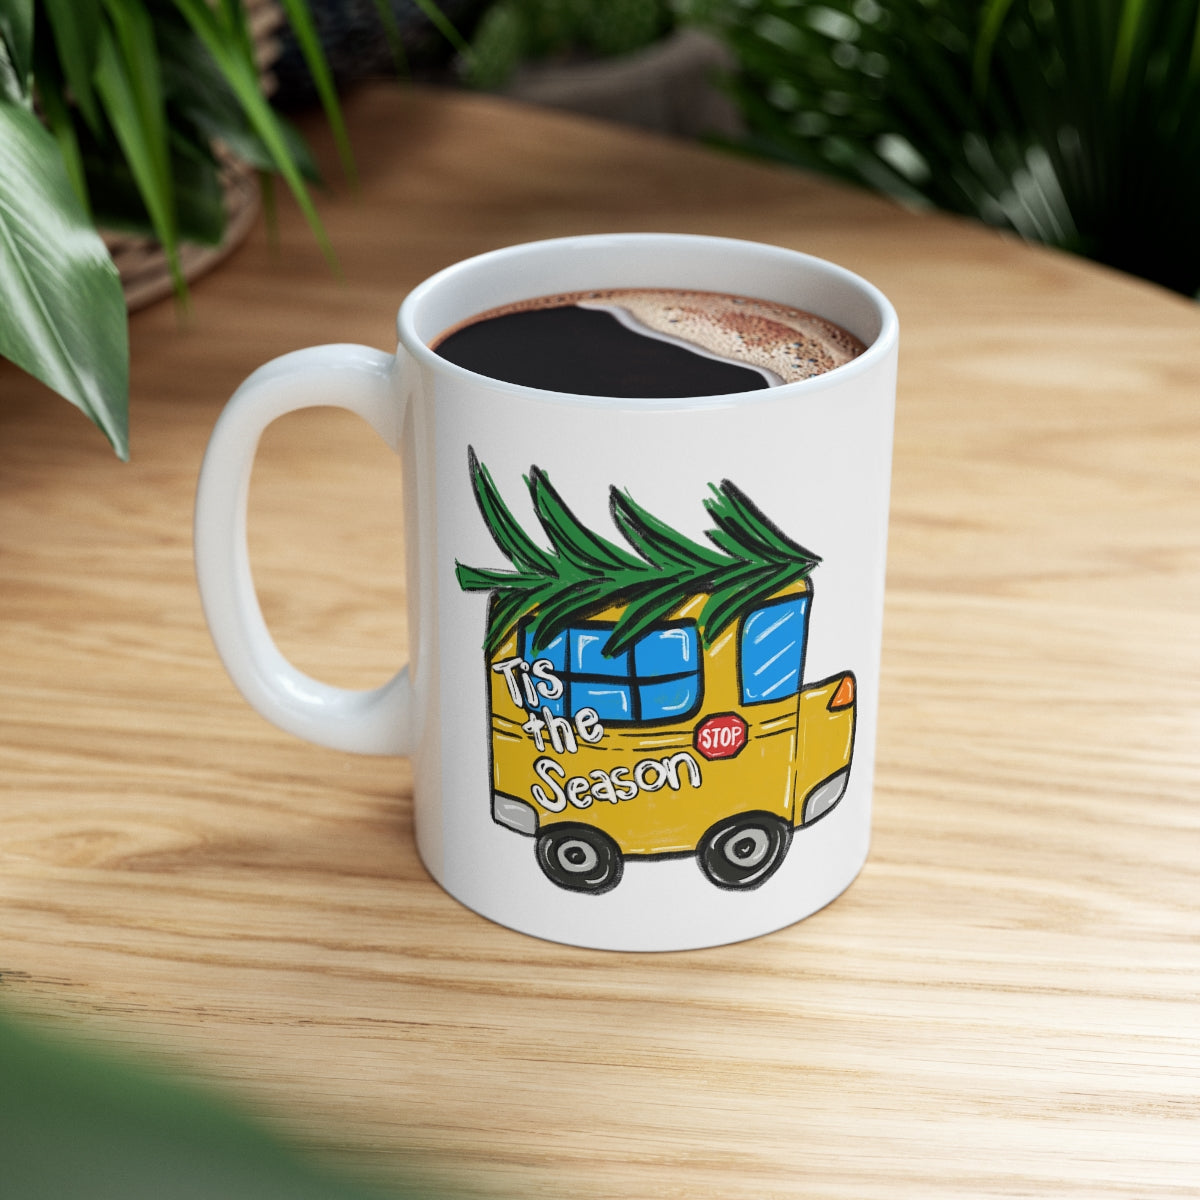 School Bus Driver - Ceramic Mug 11oz